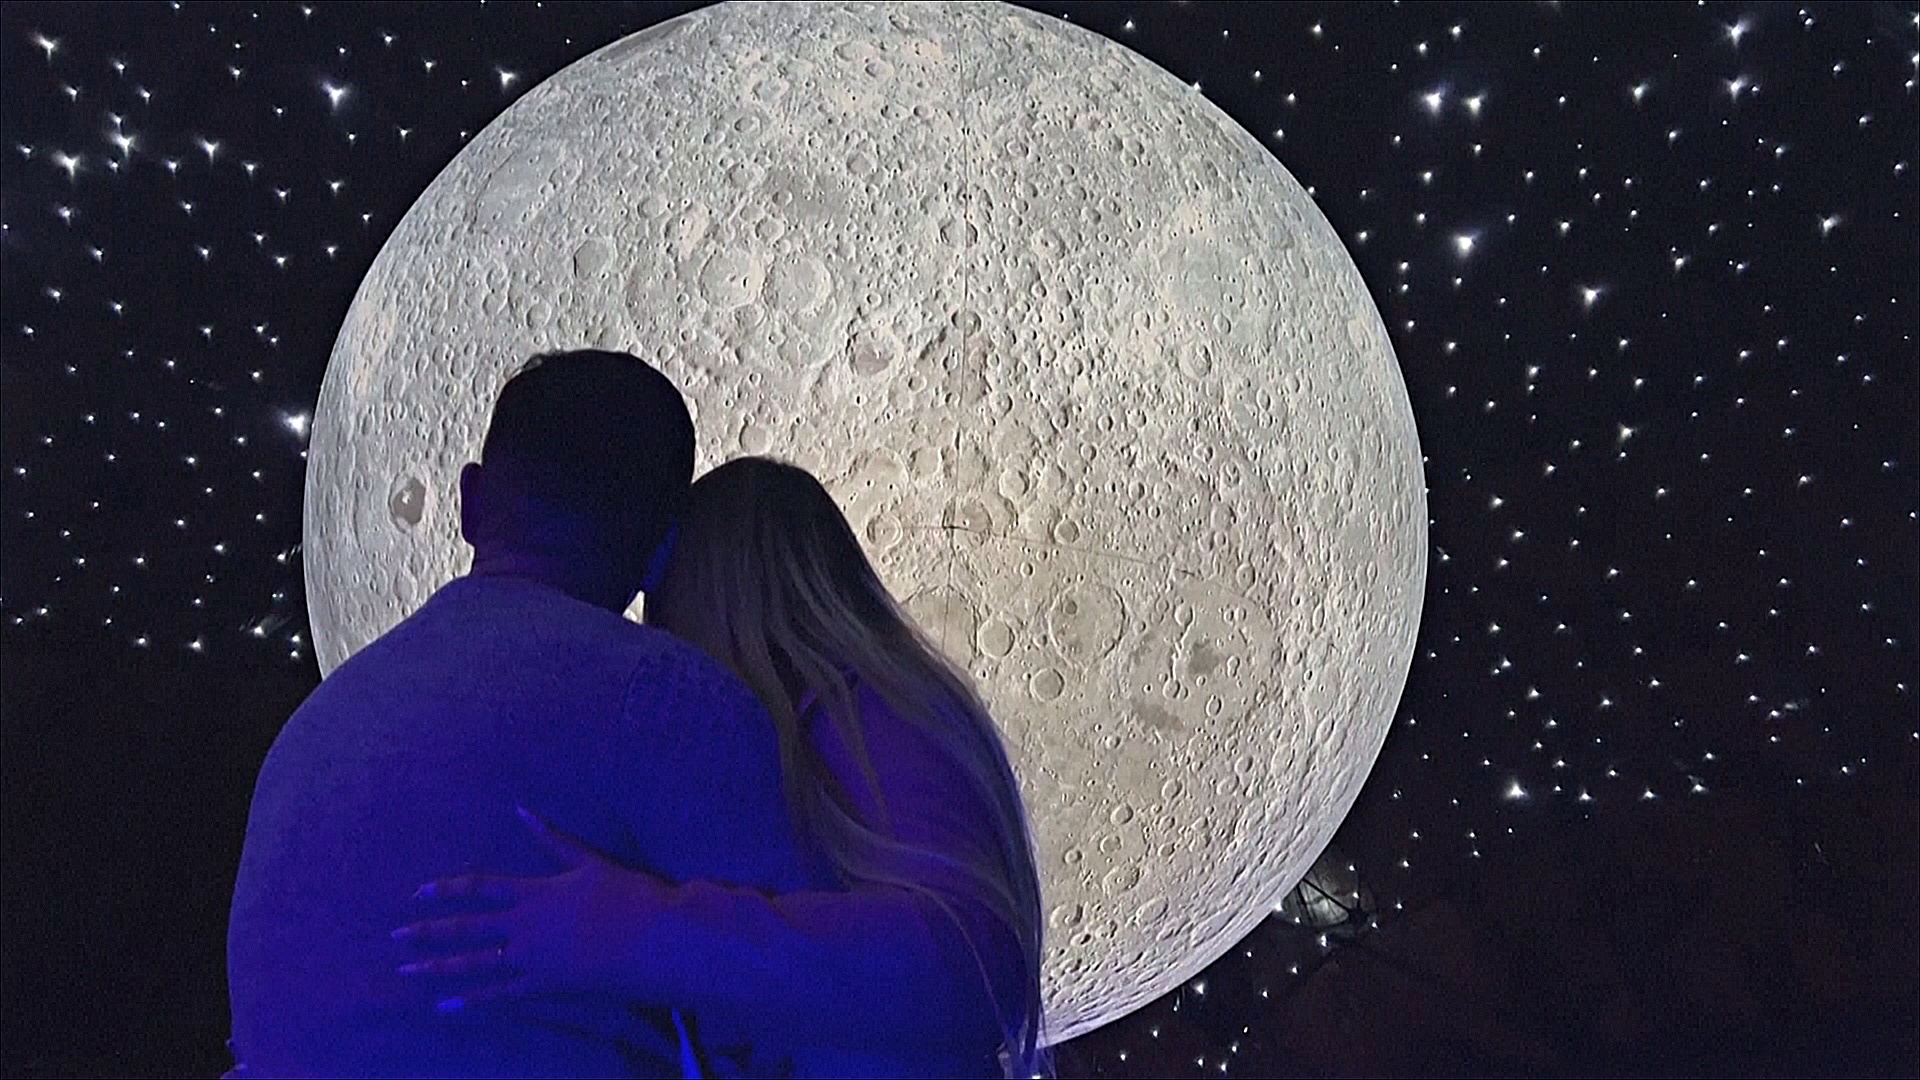 Копию Луны диаметром в 7 метров выставили в музее столицы Чили